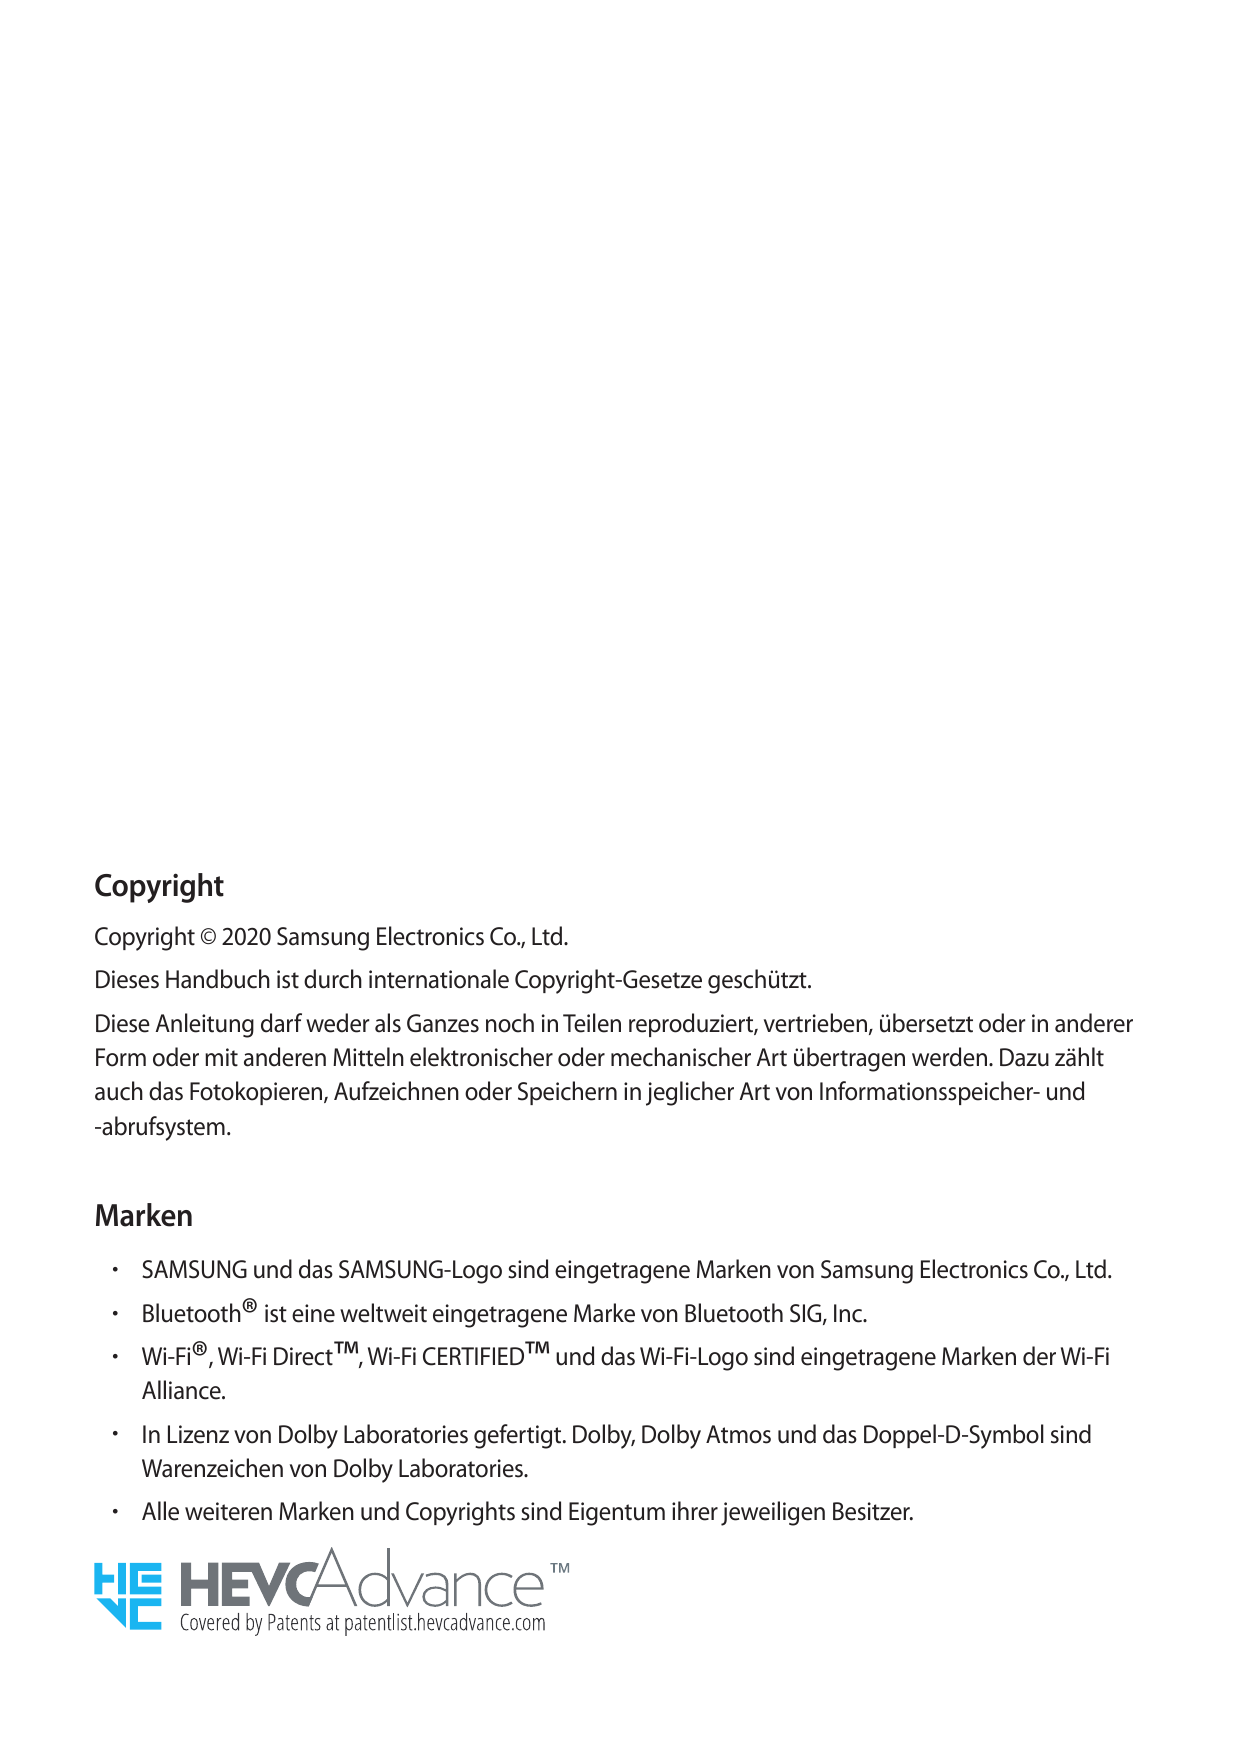 CopyrightCopyright © 2020 Samsung Electronics Co., Ltd.Dieses Handbuch ist durch internationale Copyright-Gesetze geschützt.Dies